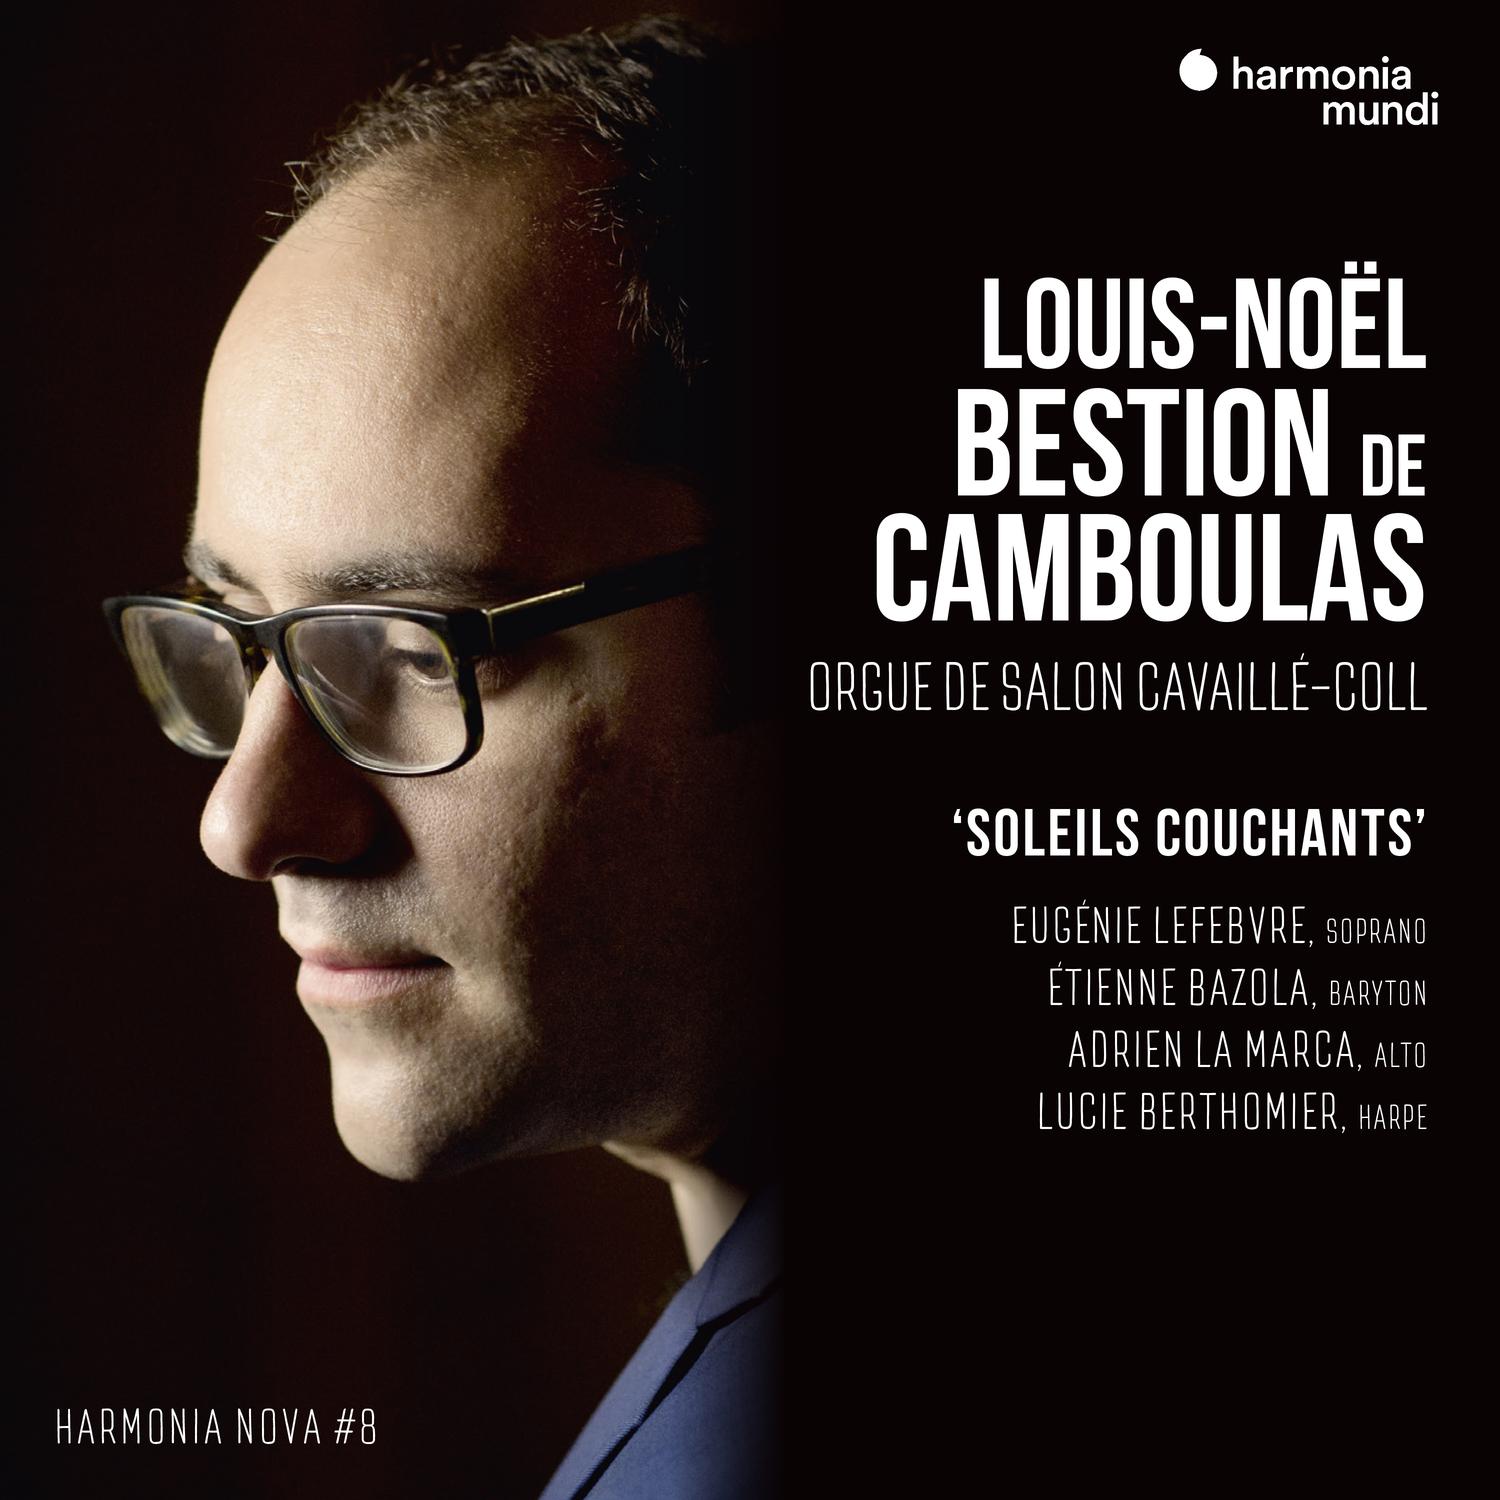 VA - Louis-Noel Bestion de Camboulas: Soleils couchants - harmonia nova #8 (2019) [FLAC 24bit/88,2kHz]